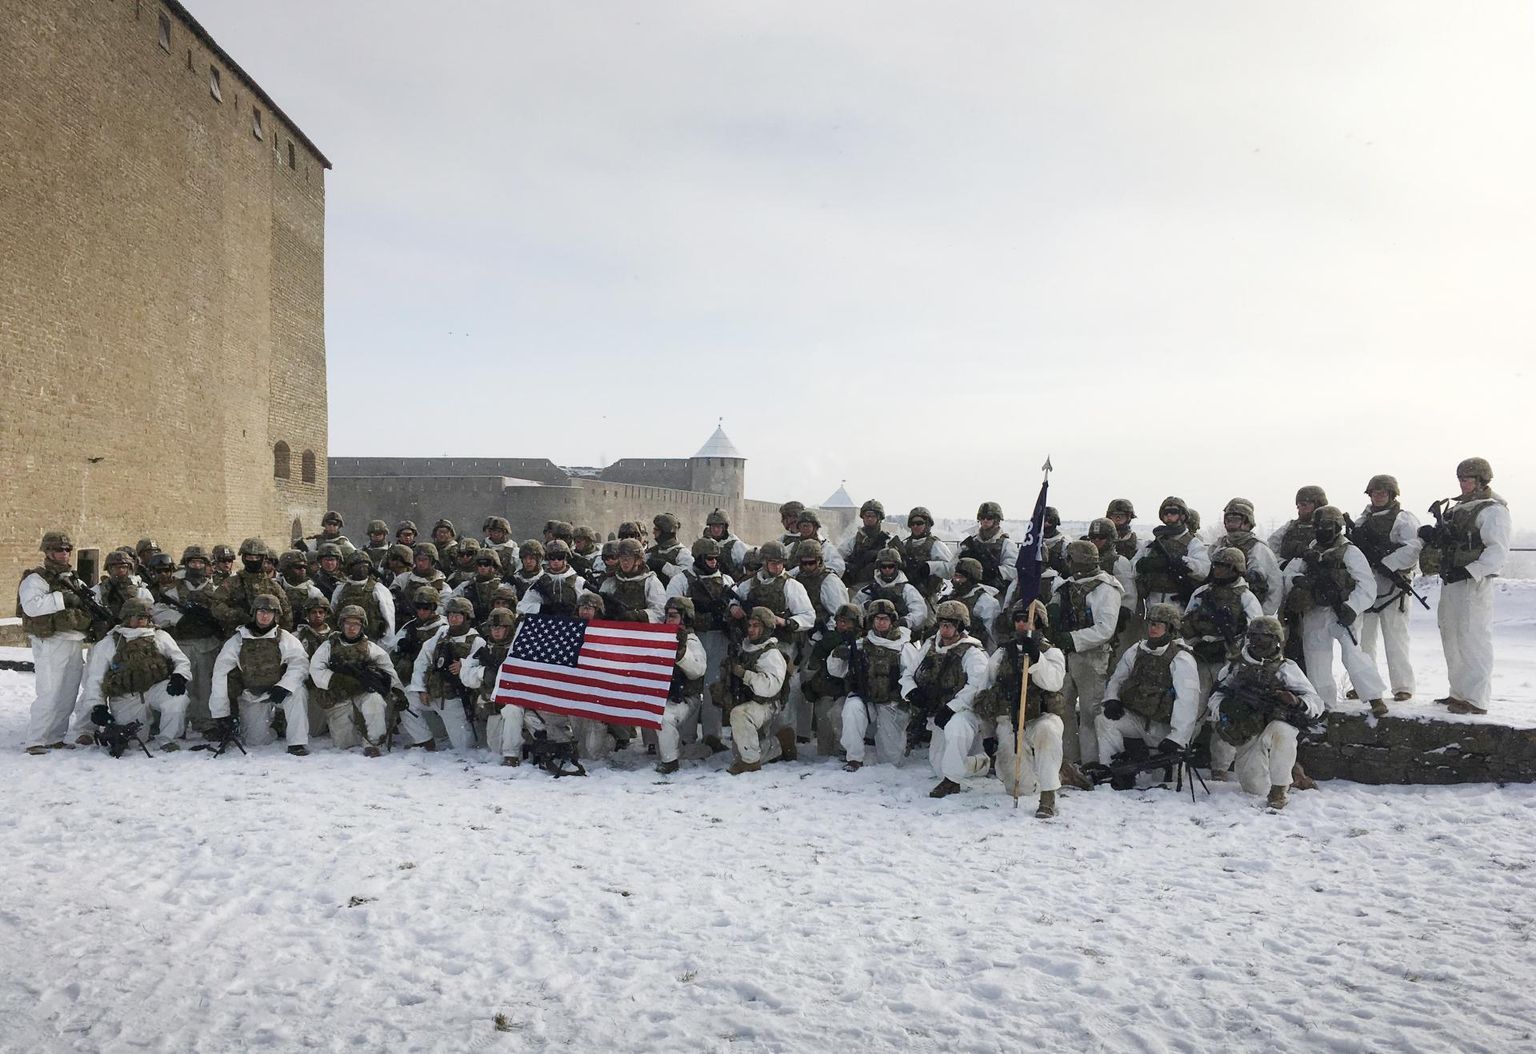 Ameeriklastelt saabuv täiendav liitlasüksus on järjekordne näide Washingtoni pühendumusest liitlaste julgeoleku tagamisele. Küll väiksema kaliibriga, aga sama mõttega tour de force’i sai näha 2017. aasta veebruaris, kui USA dessantväelased korraldasid Ida-Virumaal talvemarsi. Retk päädis toona ühispildiga Narva linnuses, taamal Ivangorodi linnus. See sümboolne samm ei jäänud Moskva kriitikata, nii et ilmselt pillutakse ka värske uudise kohta teisel pool Narva jõge uusi nooli.